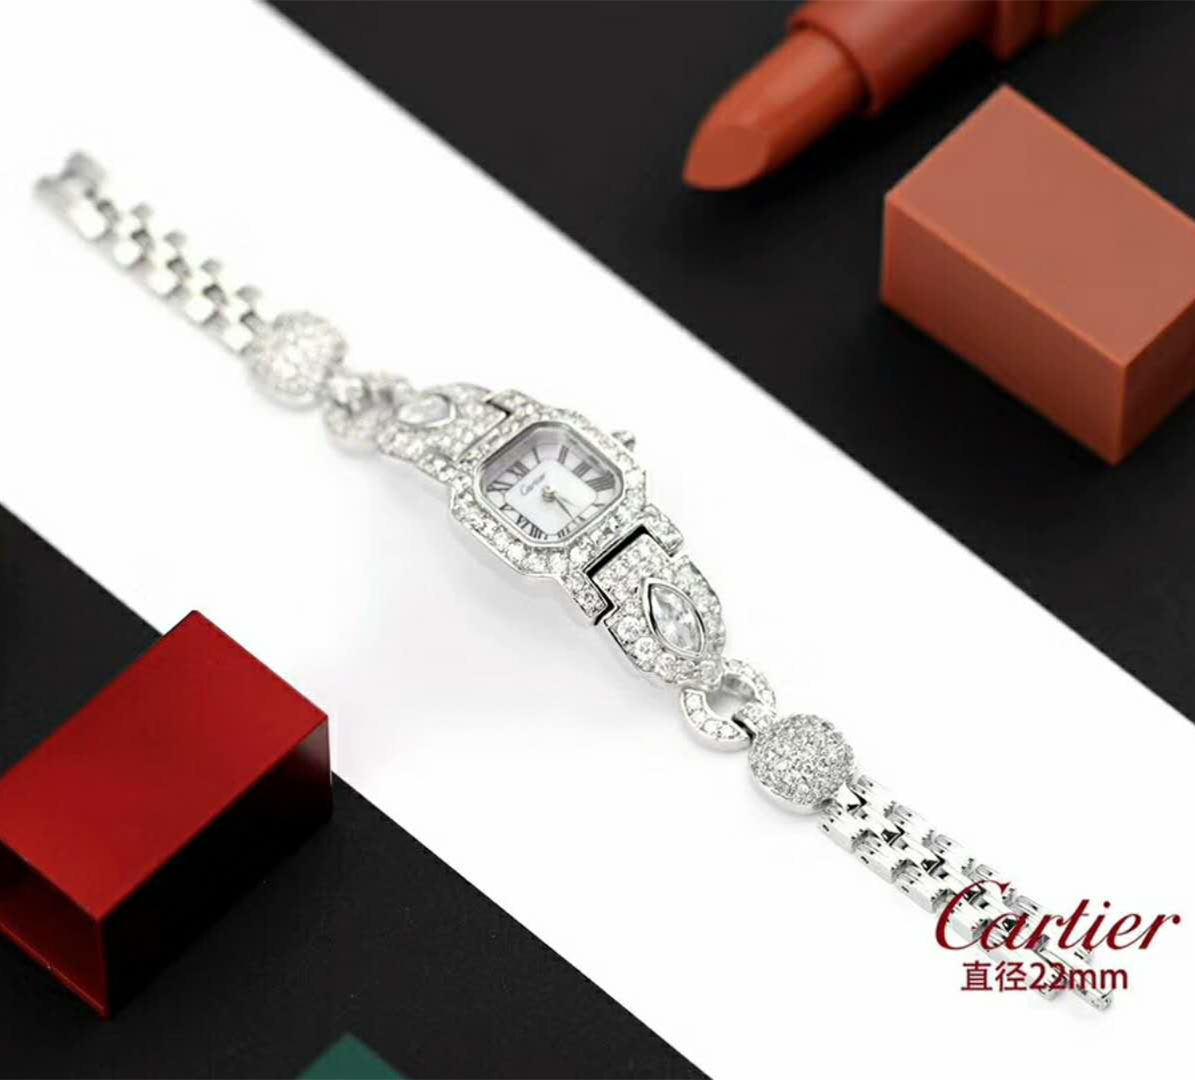 卡地亞 Cartier 推出最新高級珠寶腕錶,滿鉆腕錶盡顯魅惑風情！